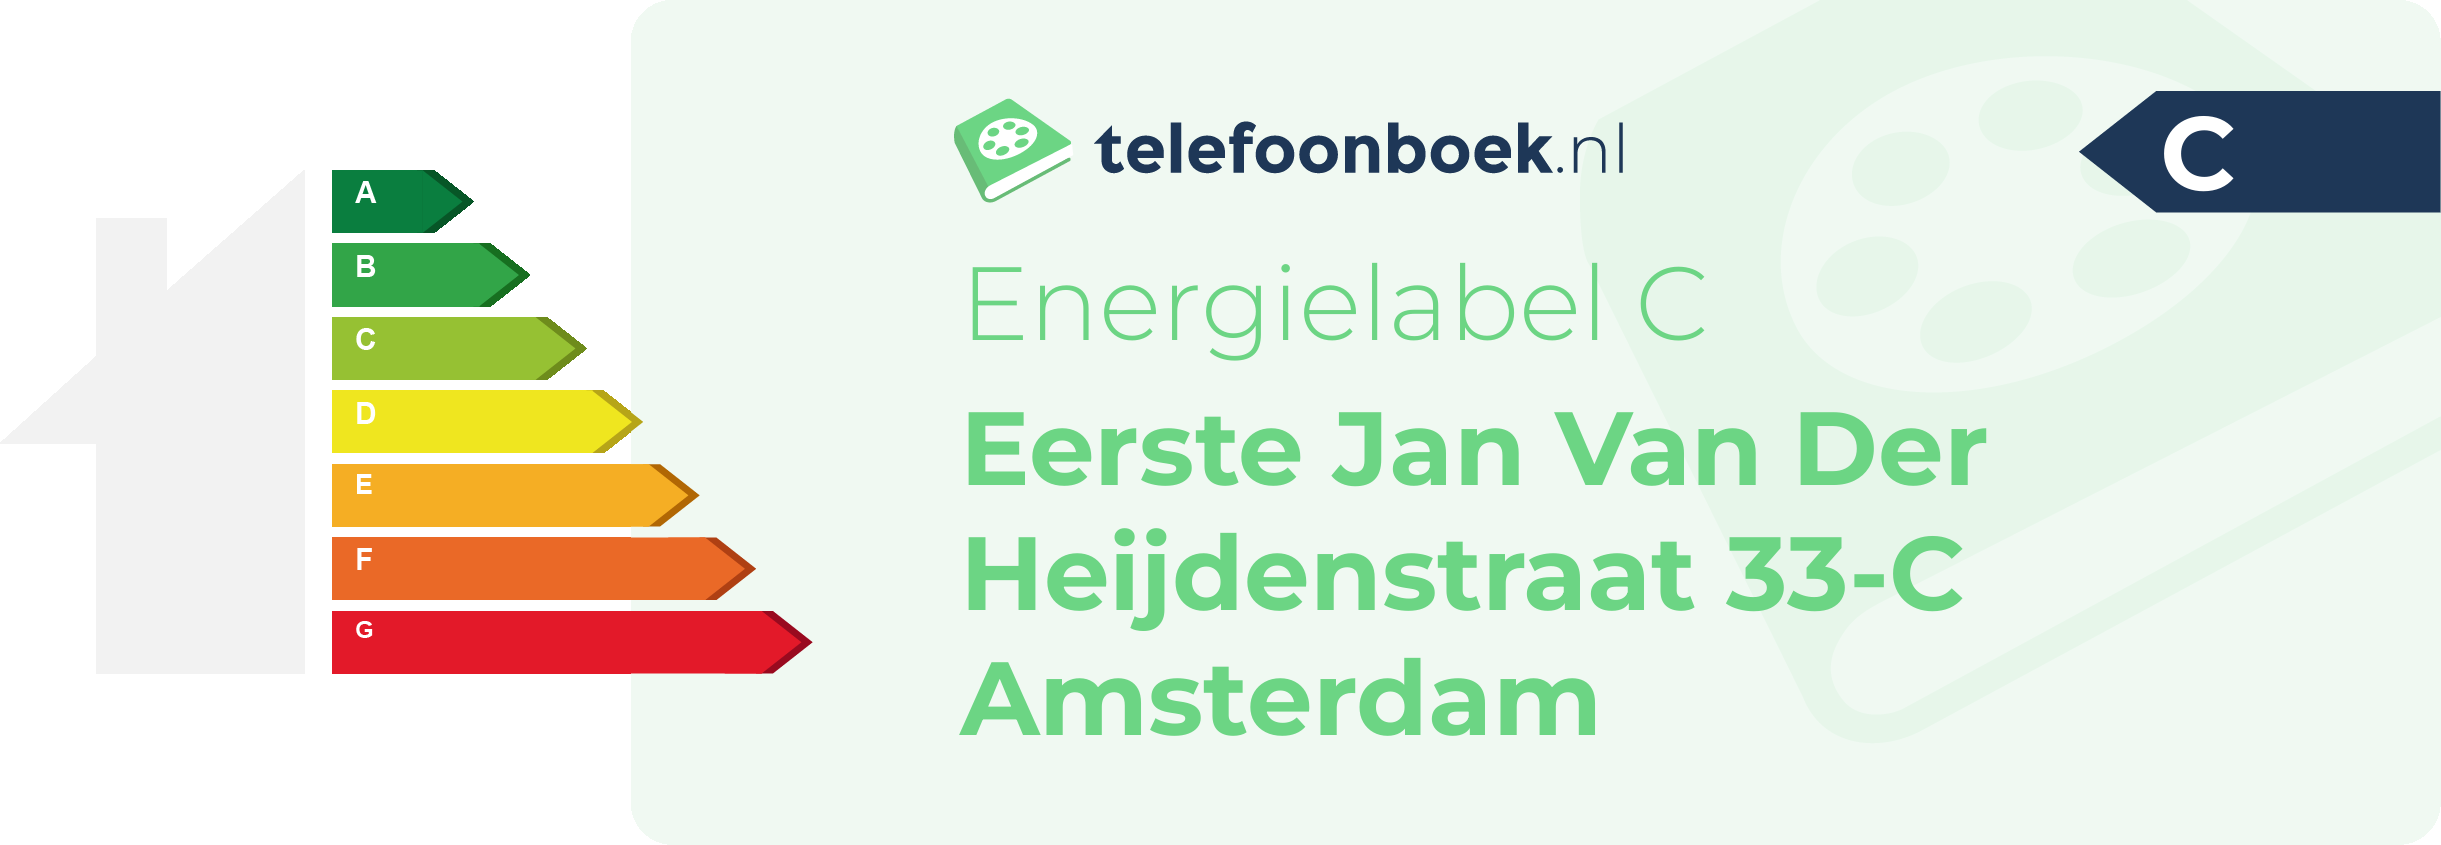 Energielabel Eerste Jan Van Der Heijdenstraat 33-C Amsterdam